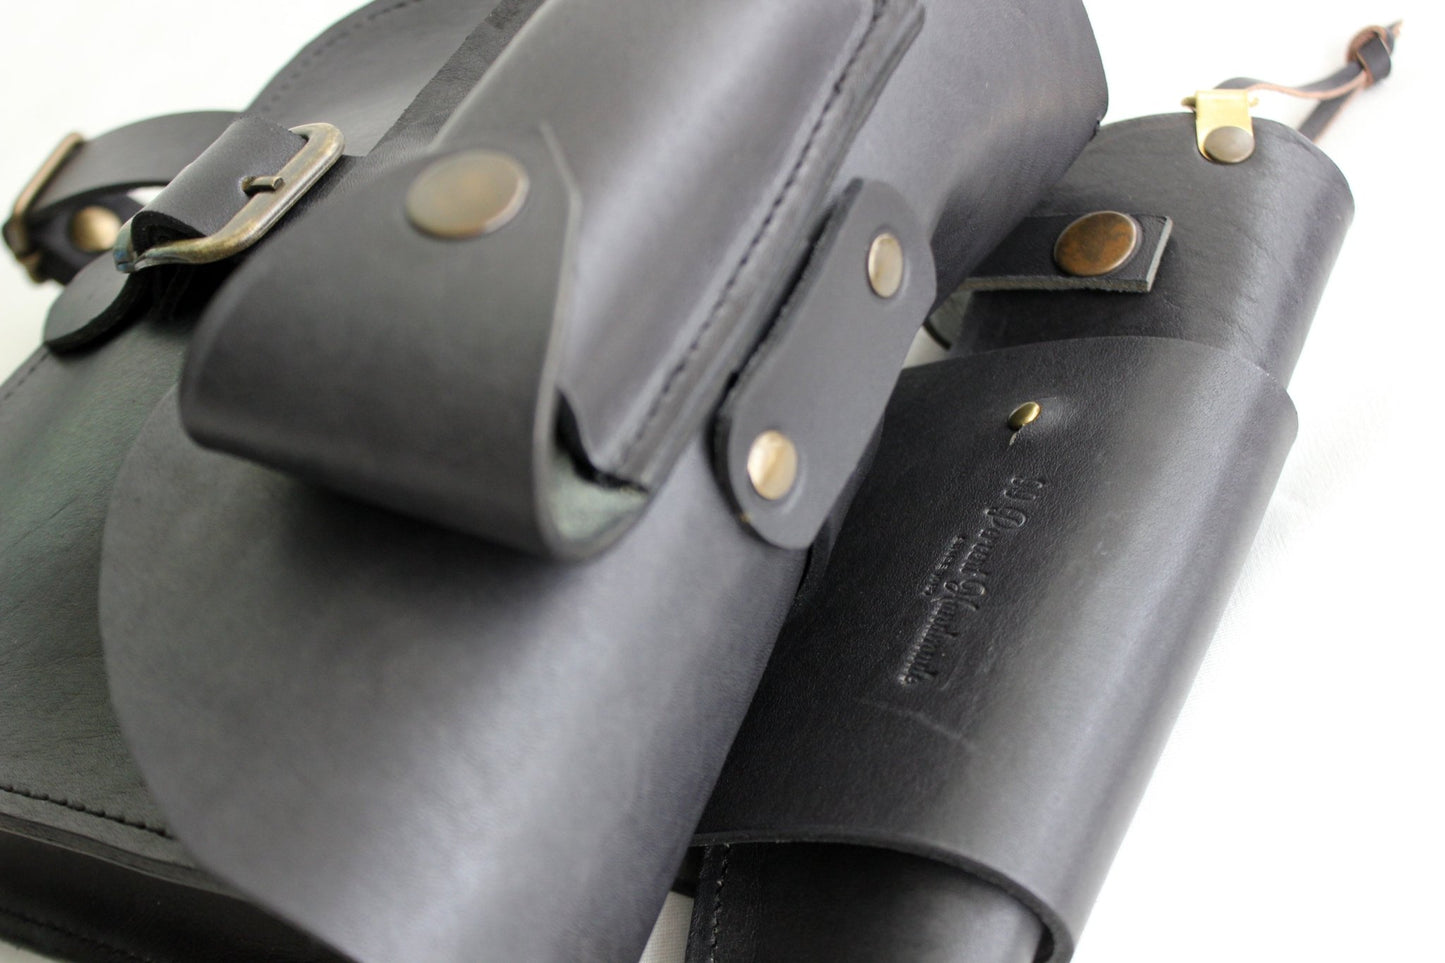 Handmade Leather Utility Belt Set | Tool Belt | Suspenders | Pouch | Belt Bag | Loops | Axe holder | Dangler | Viking Belt Style  99percenthandmade   